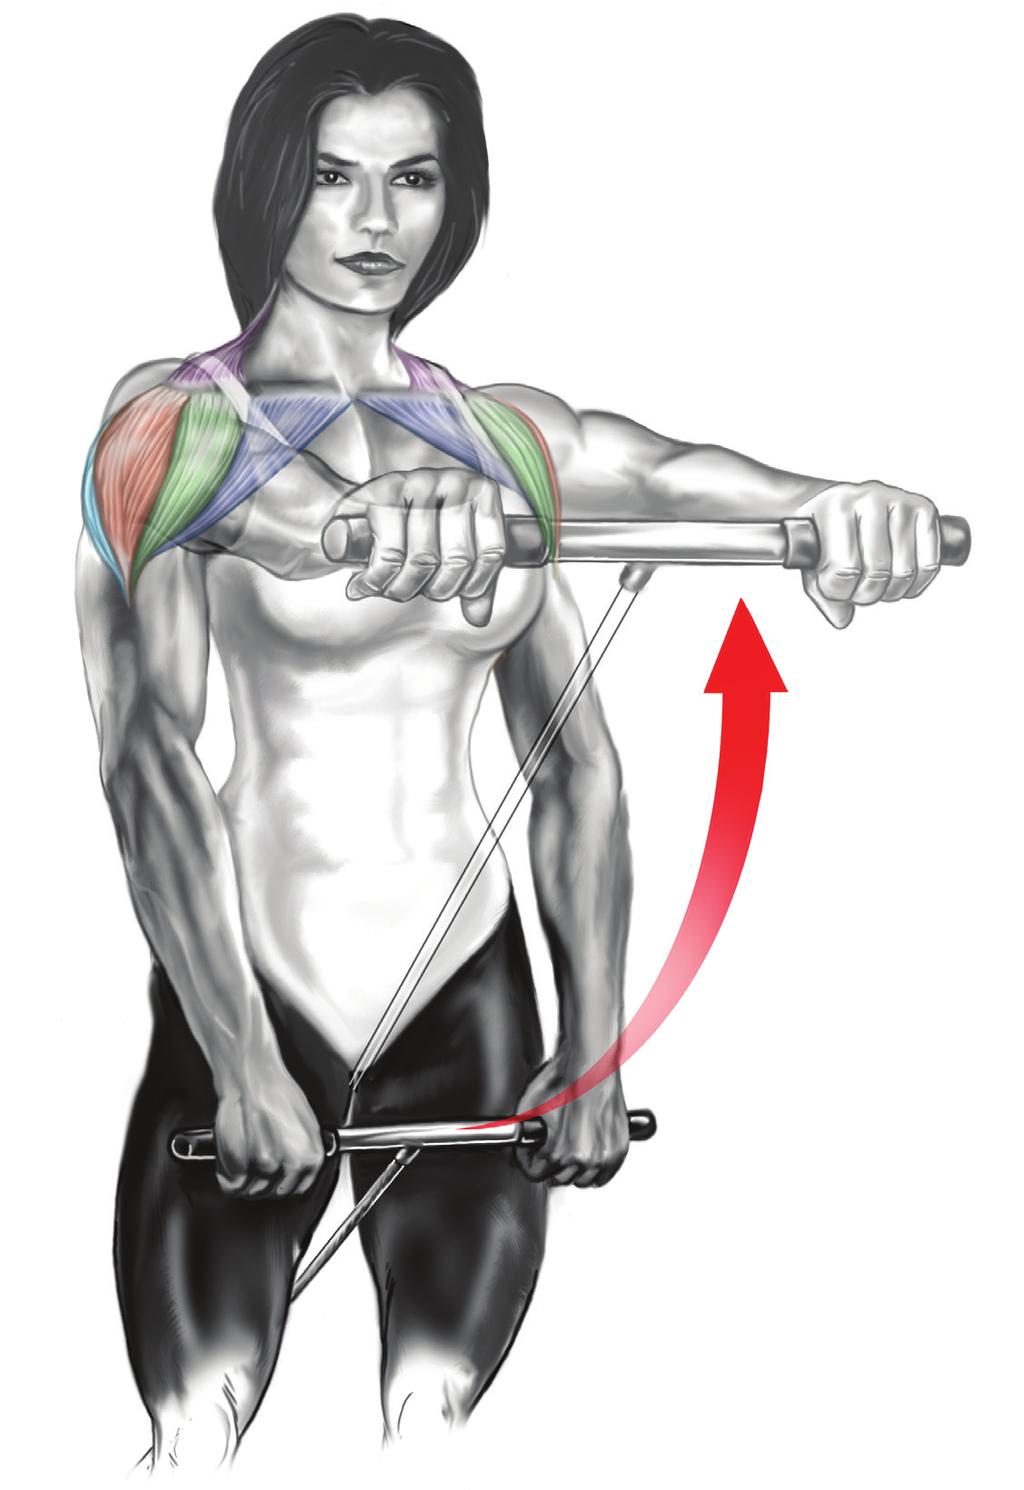 Používané svaly Primárně: přední hlava deltového svalu. Sekundárně: střední hlava deltového svalu, trapéz, horní část prsních svalů.